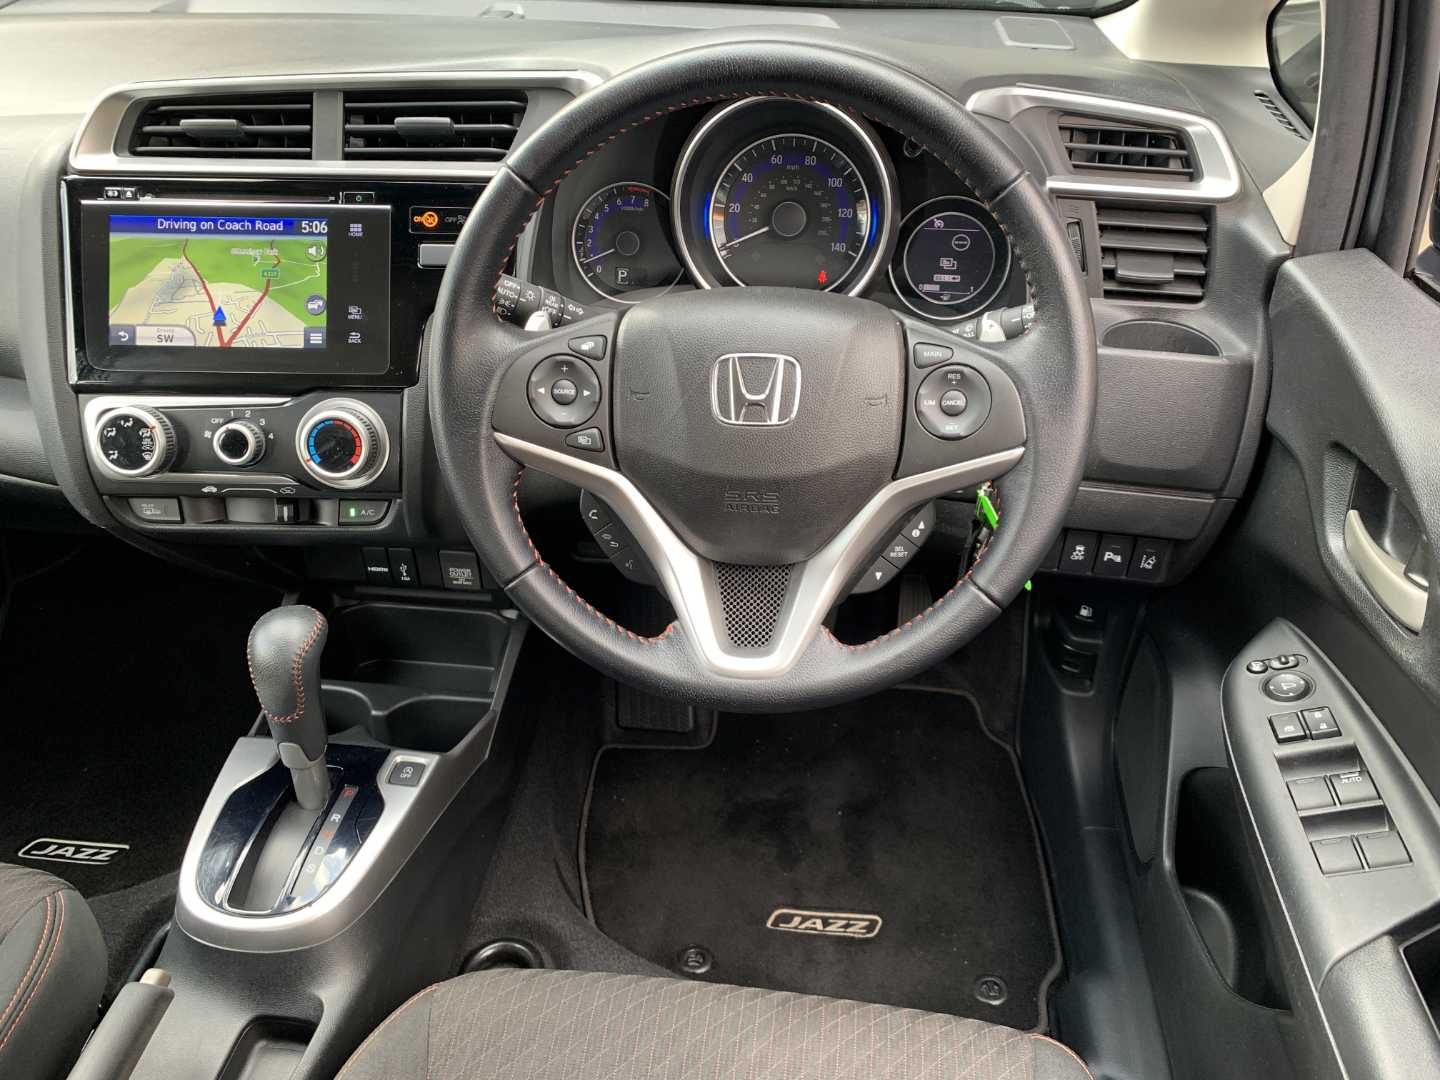 Honda JAZZ 1.5 i-VTEC Sport 5dr Navi CVT - Image 14